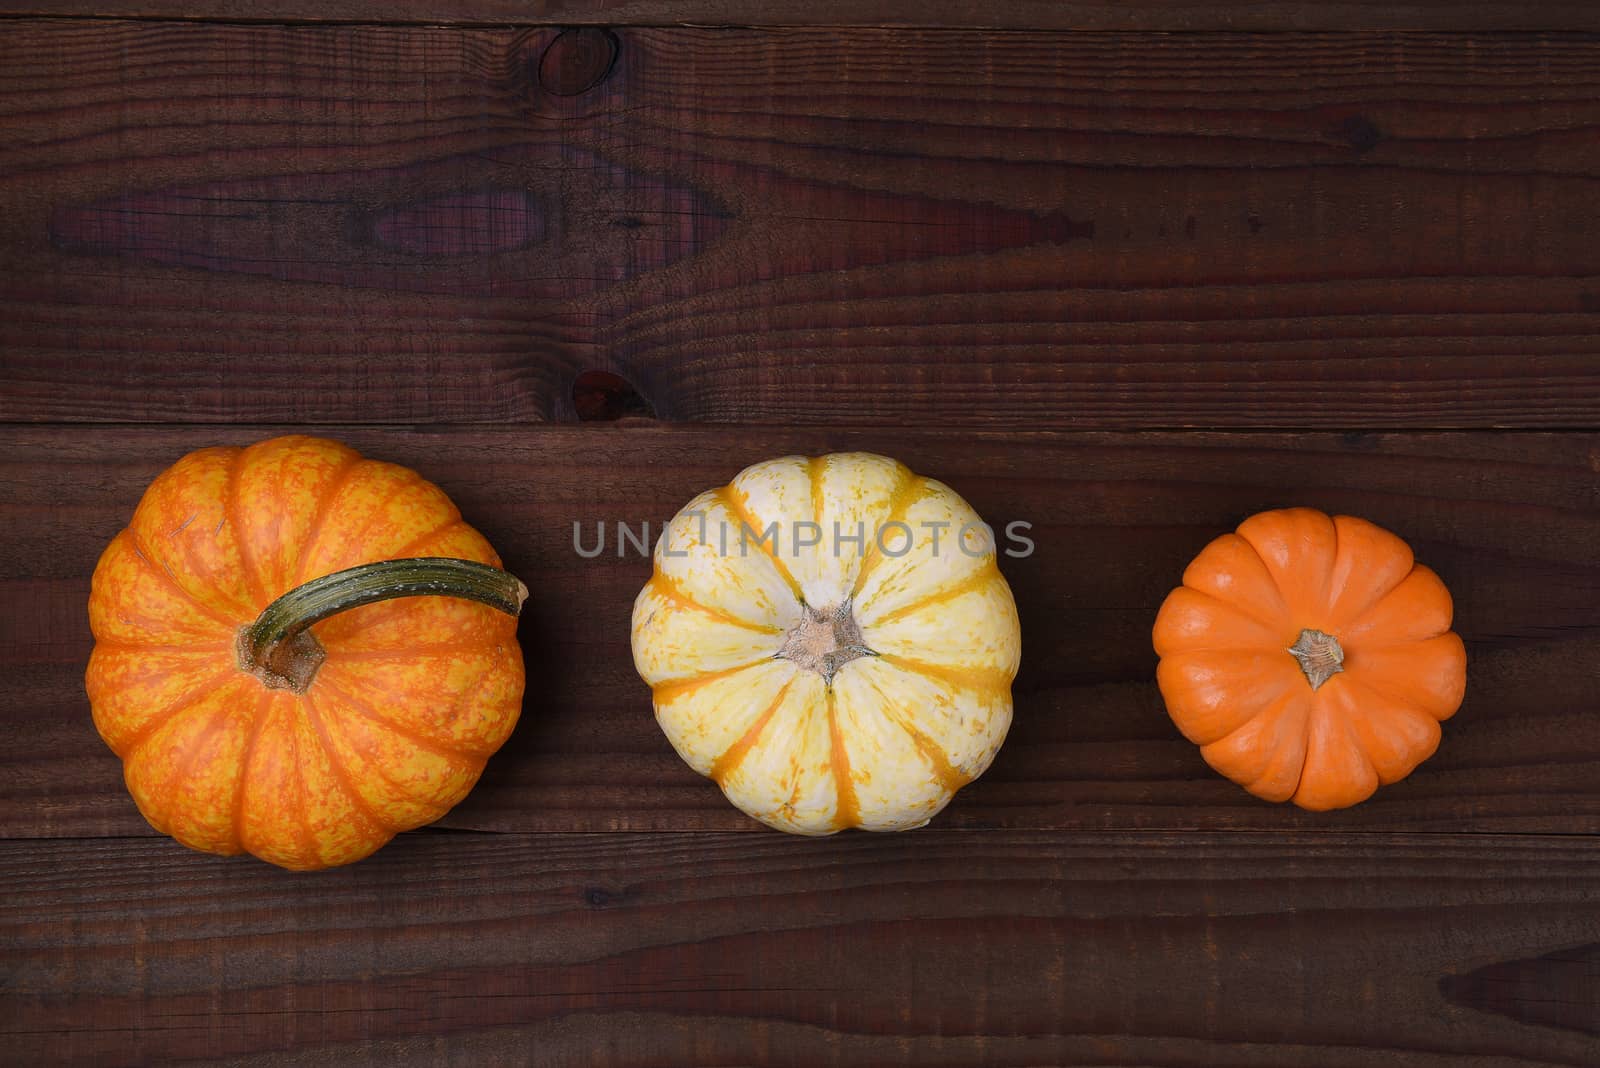 Fall Still Life: Three decorative pumpkins on a rustic wood table.